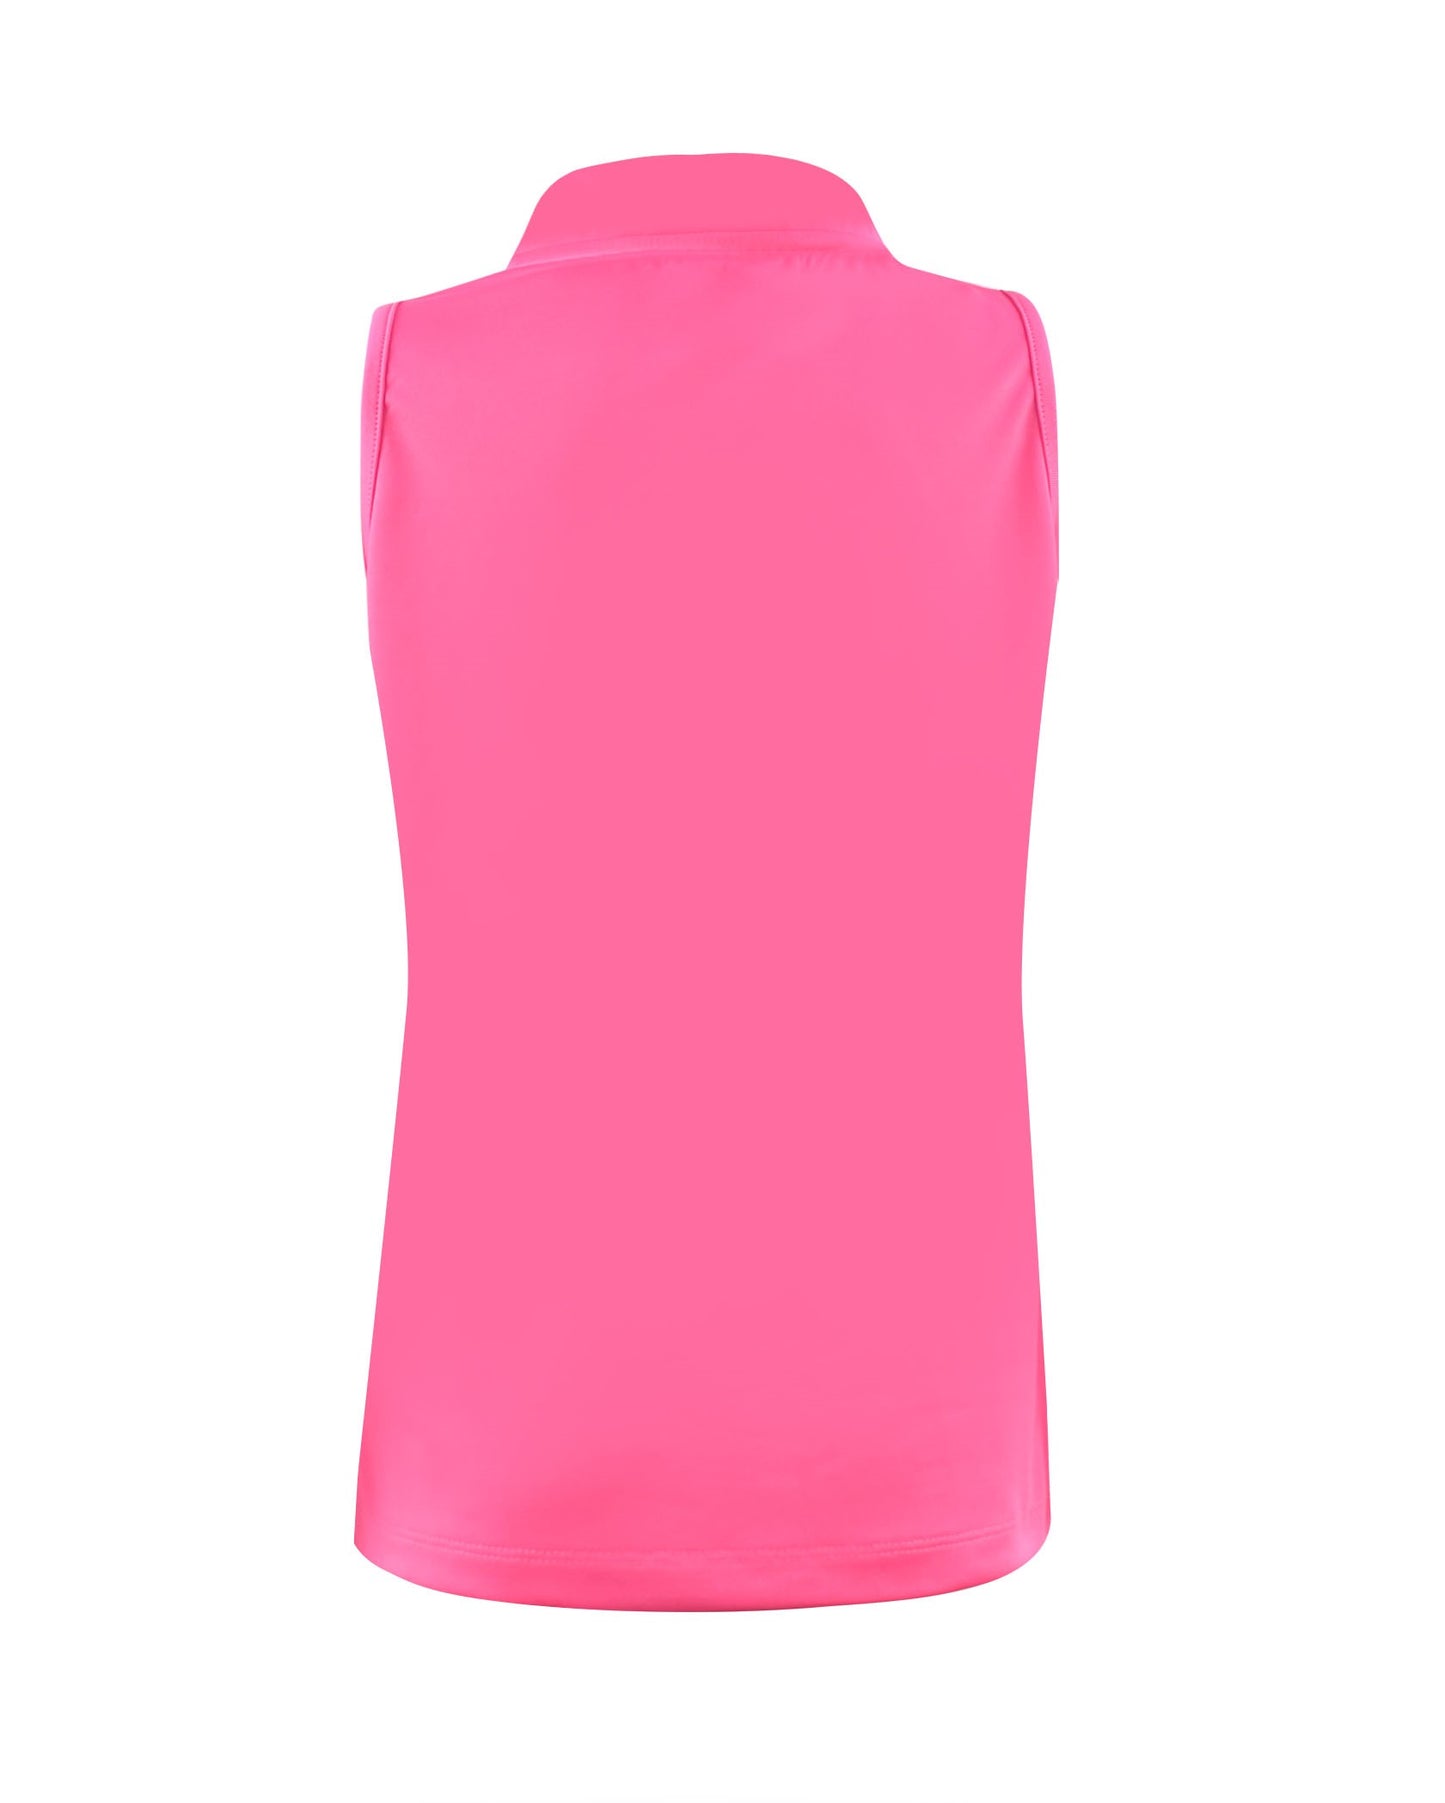 #Flamingo Beach Pink Collar Tank - New! - Little Miss Tennis